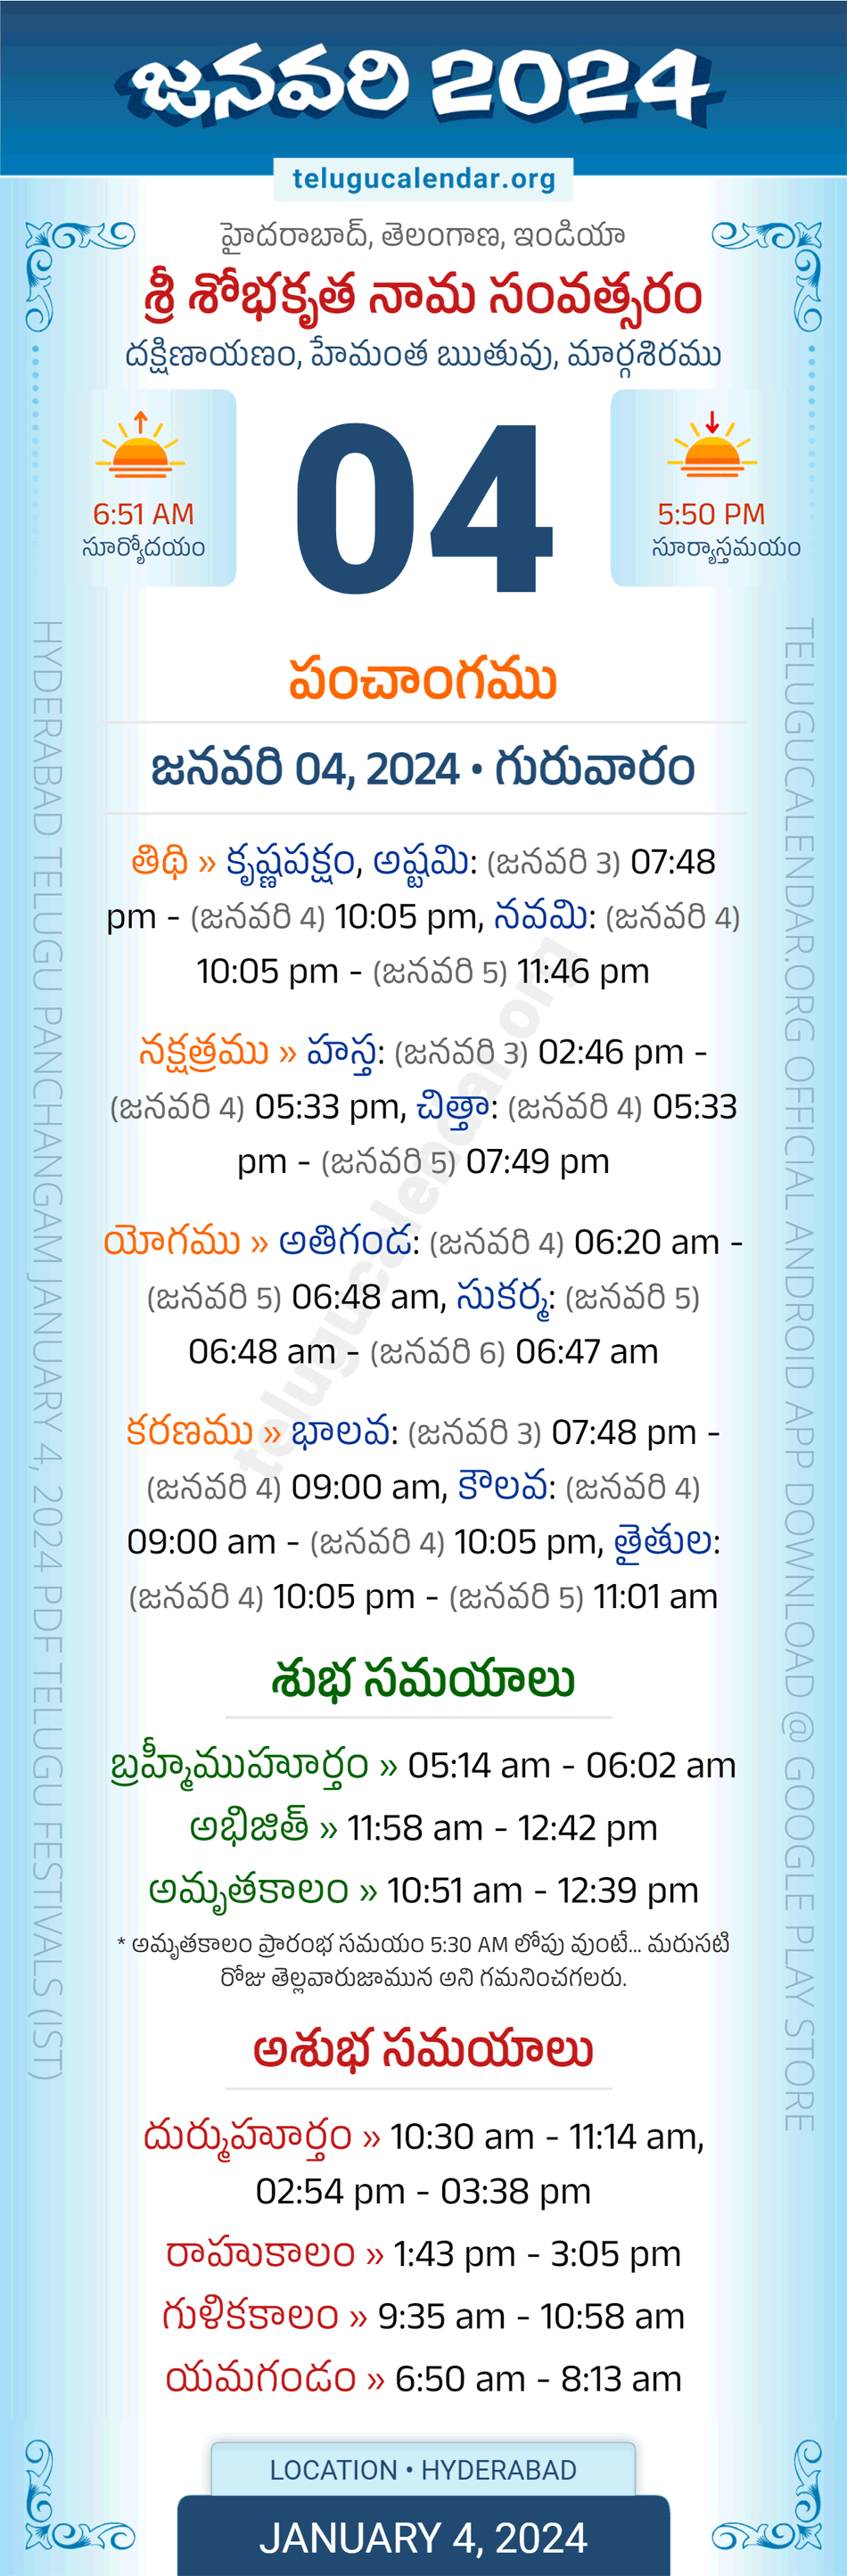 January 4, 2024 Telugu Calendar Panchangam Telangana